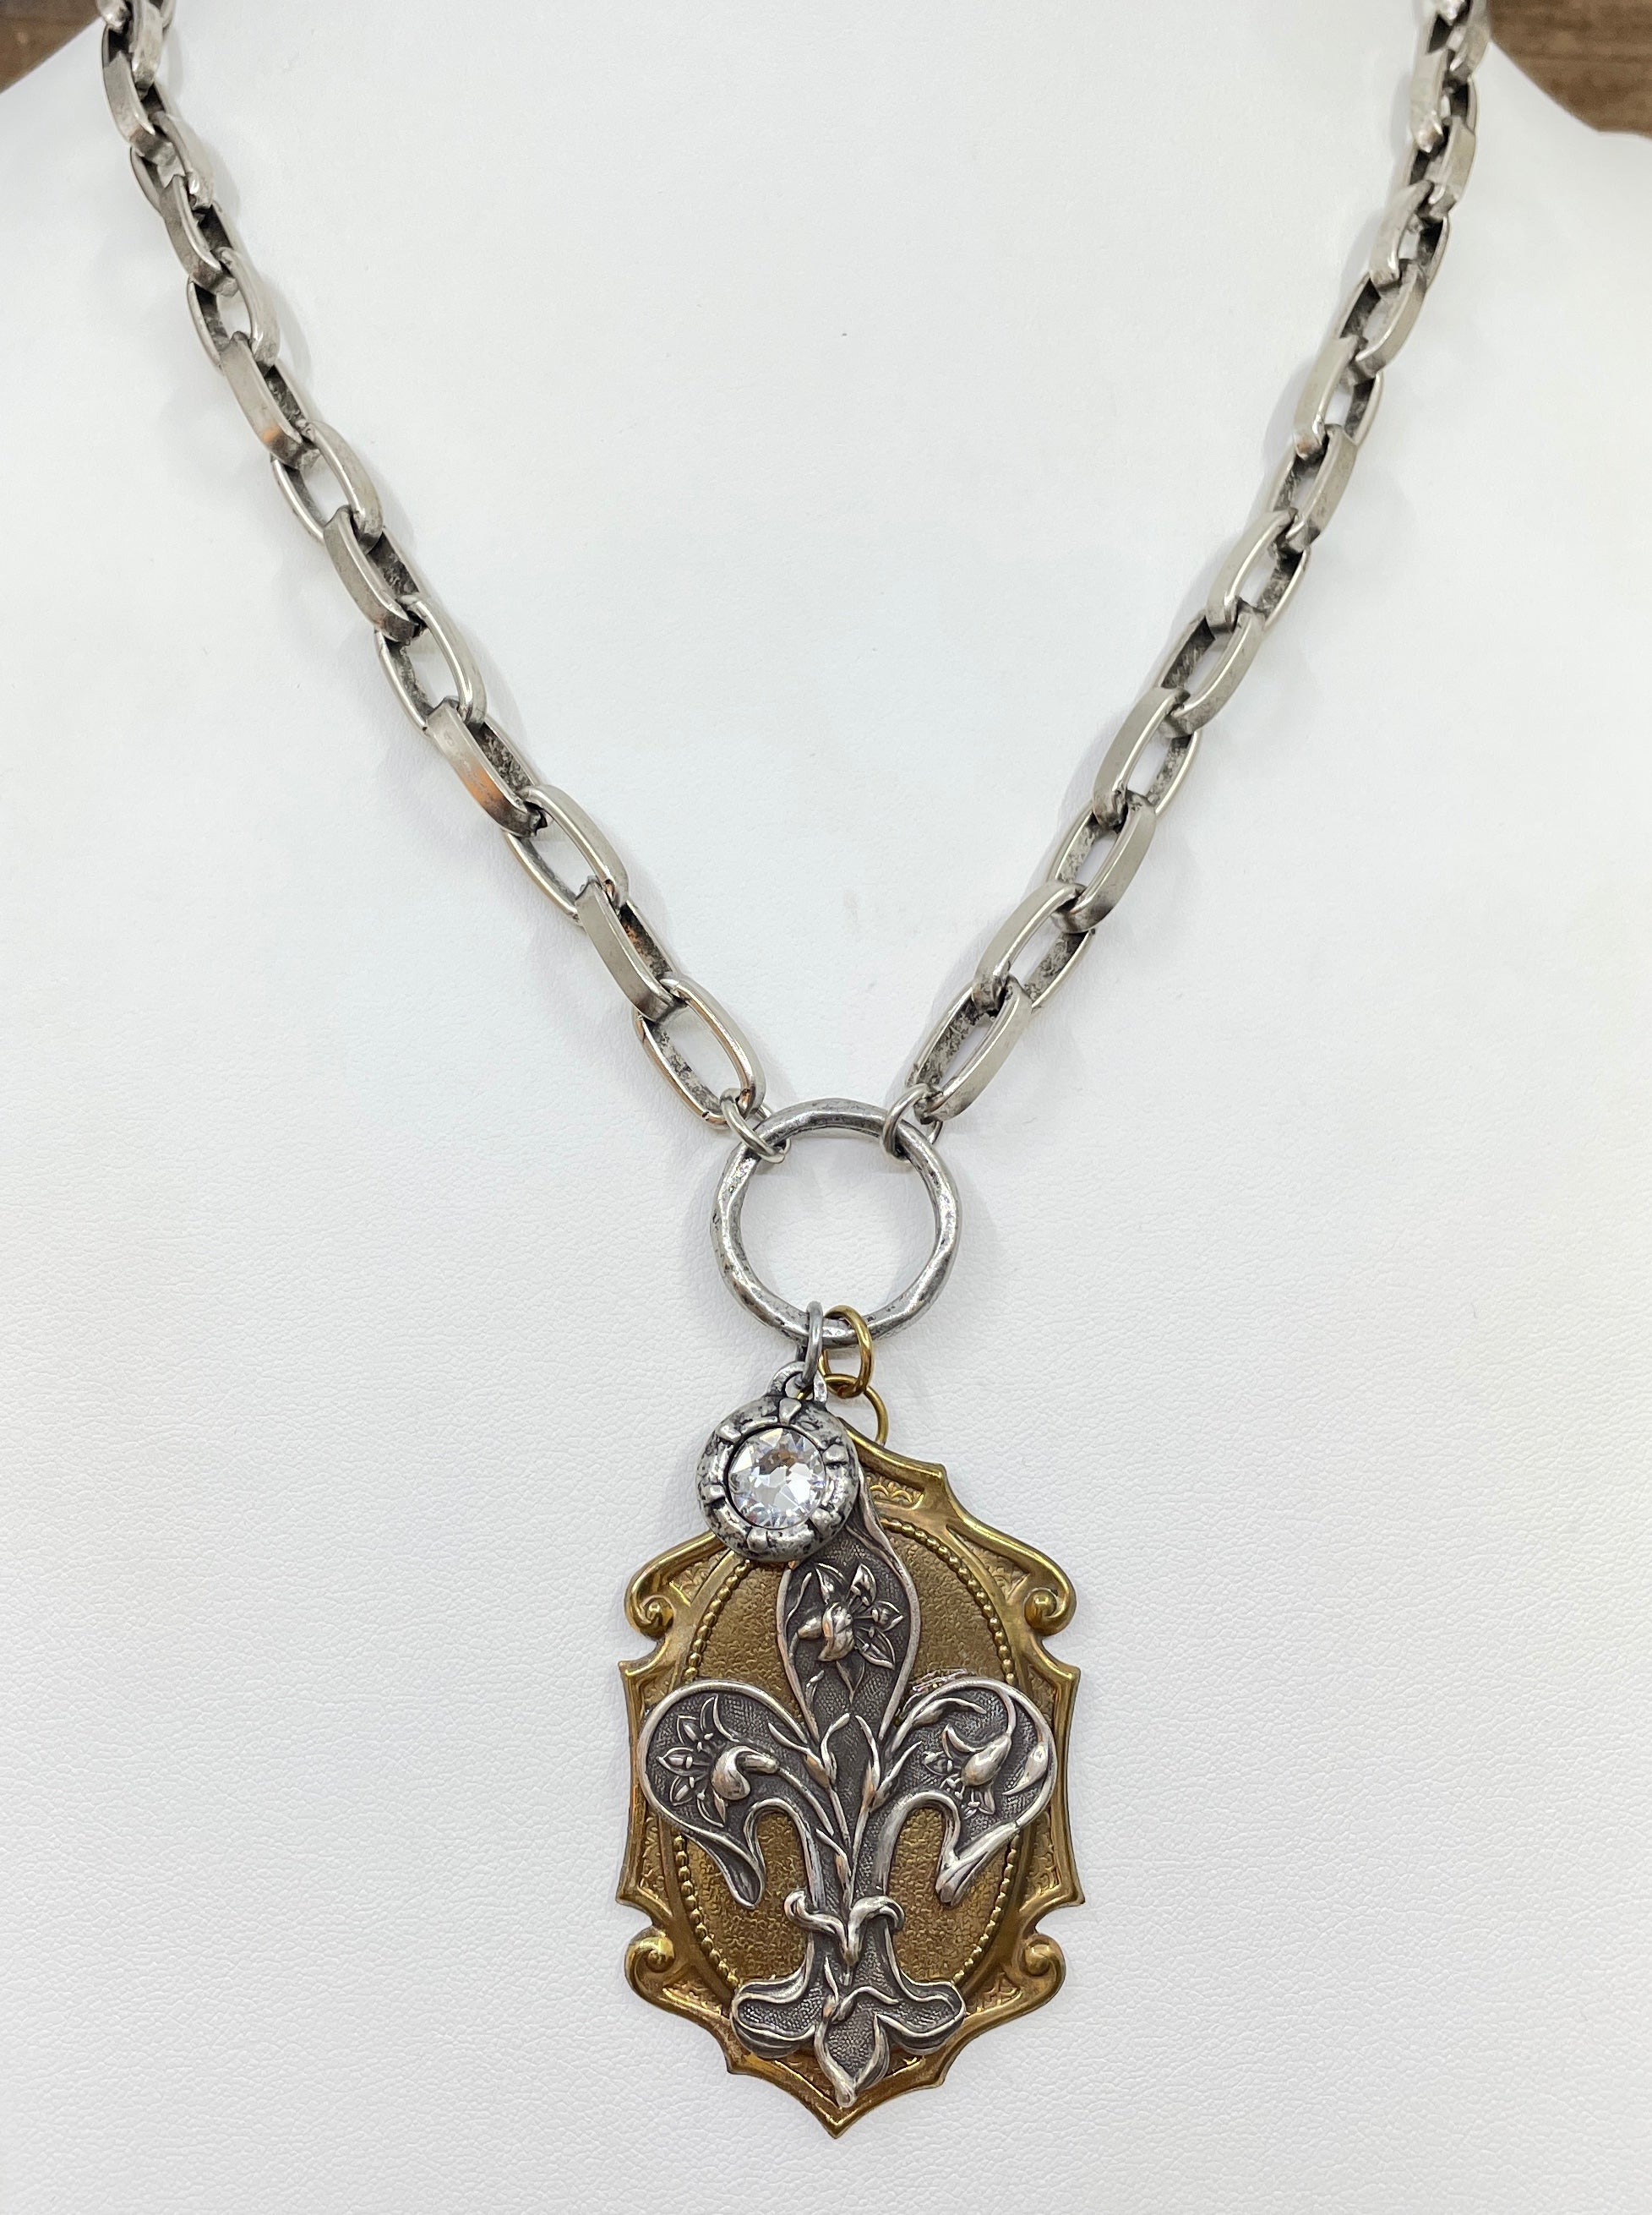 Vintage Ornate Fleur De Lis Mixed Metal Pendant Necklace